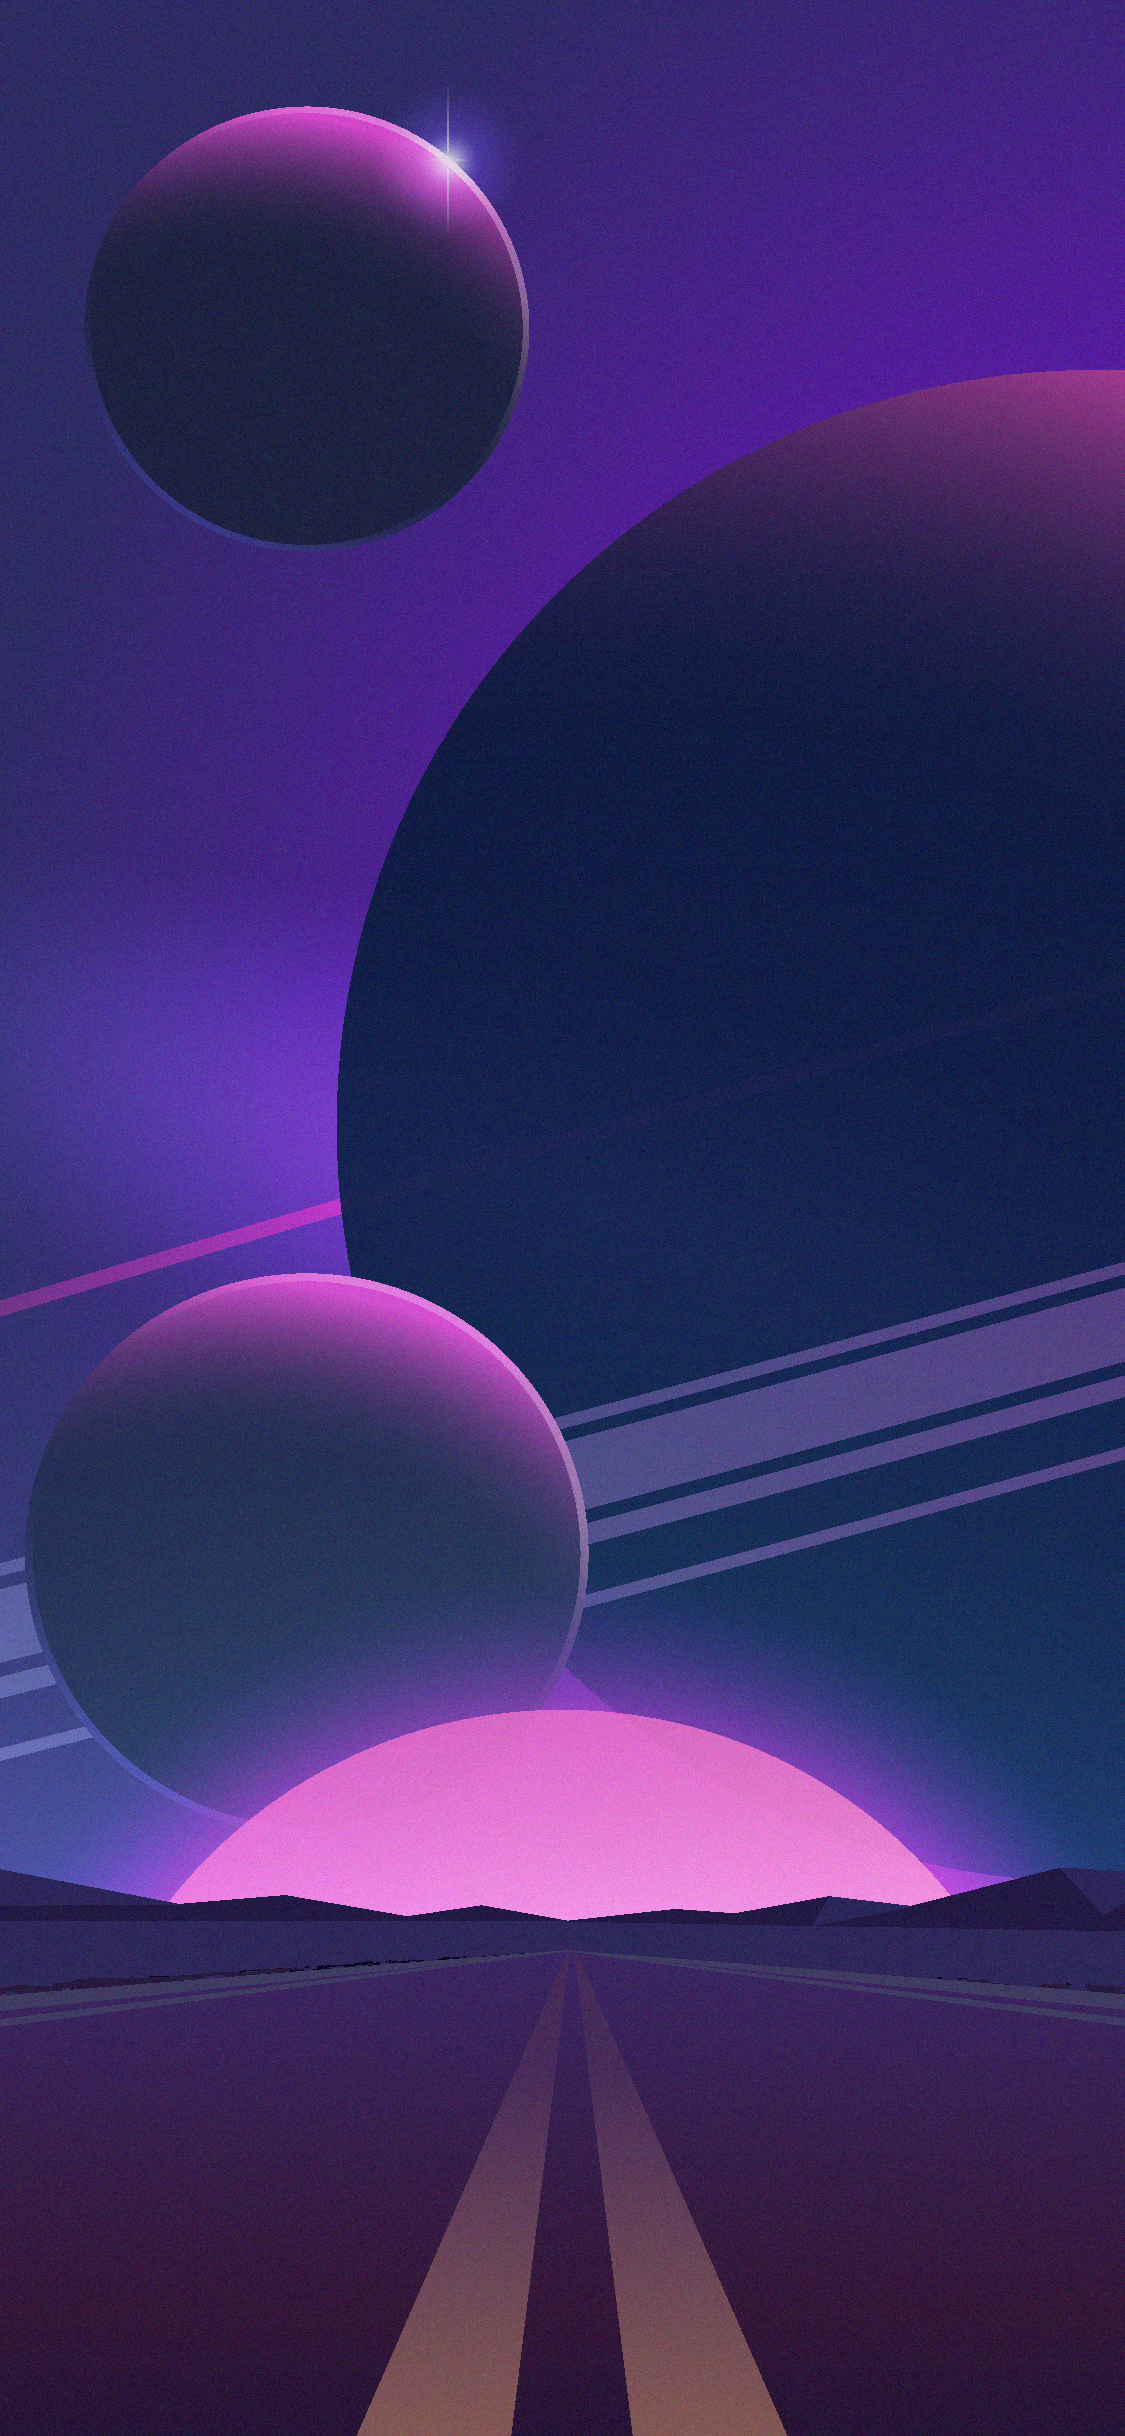 lila iphone wallpaper,lila,violett,licht,himmel,atmosphäre